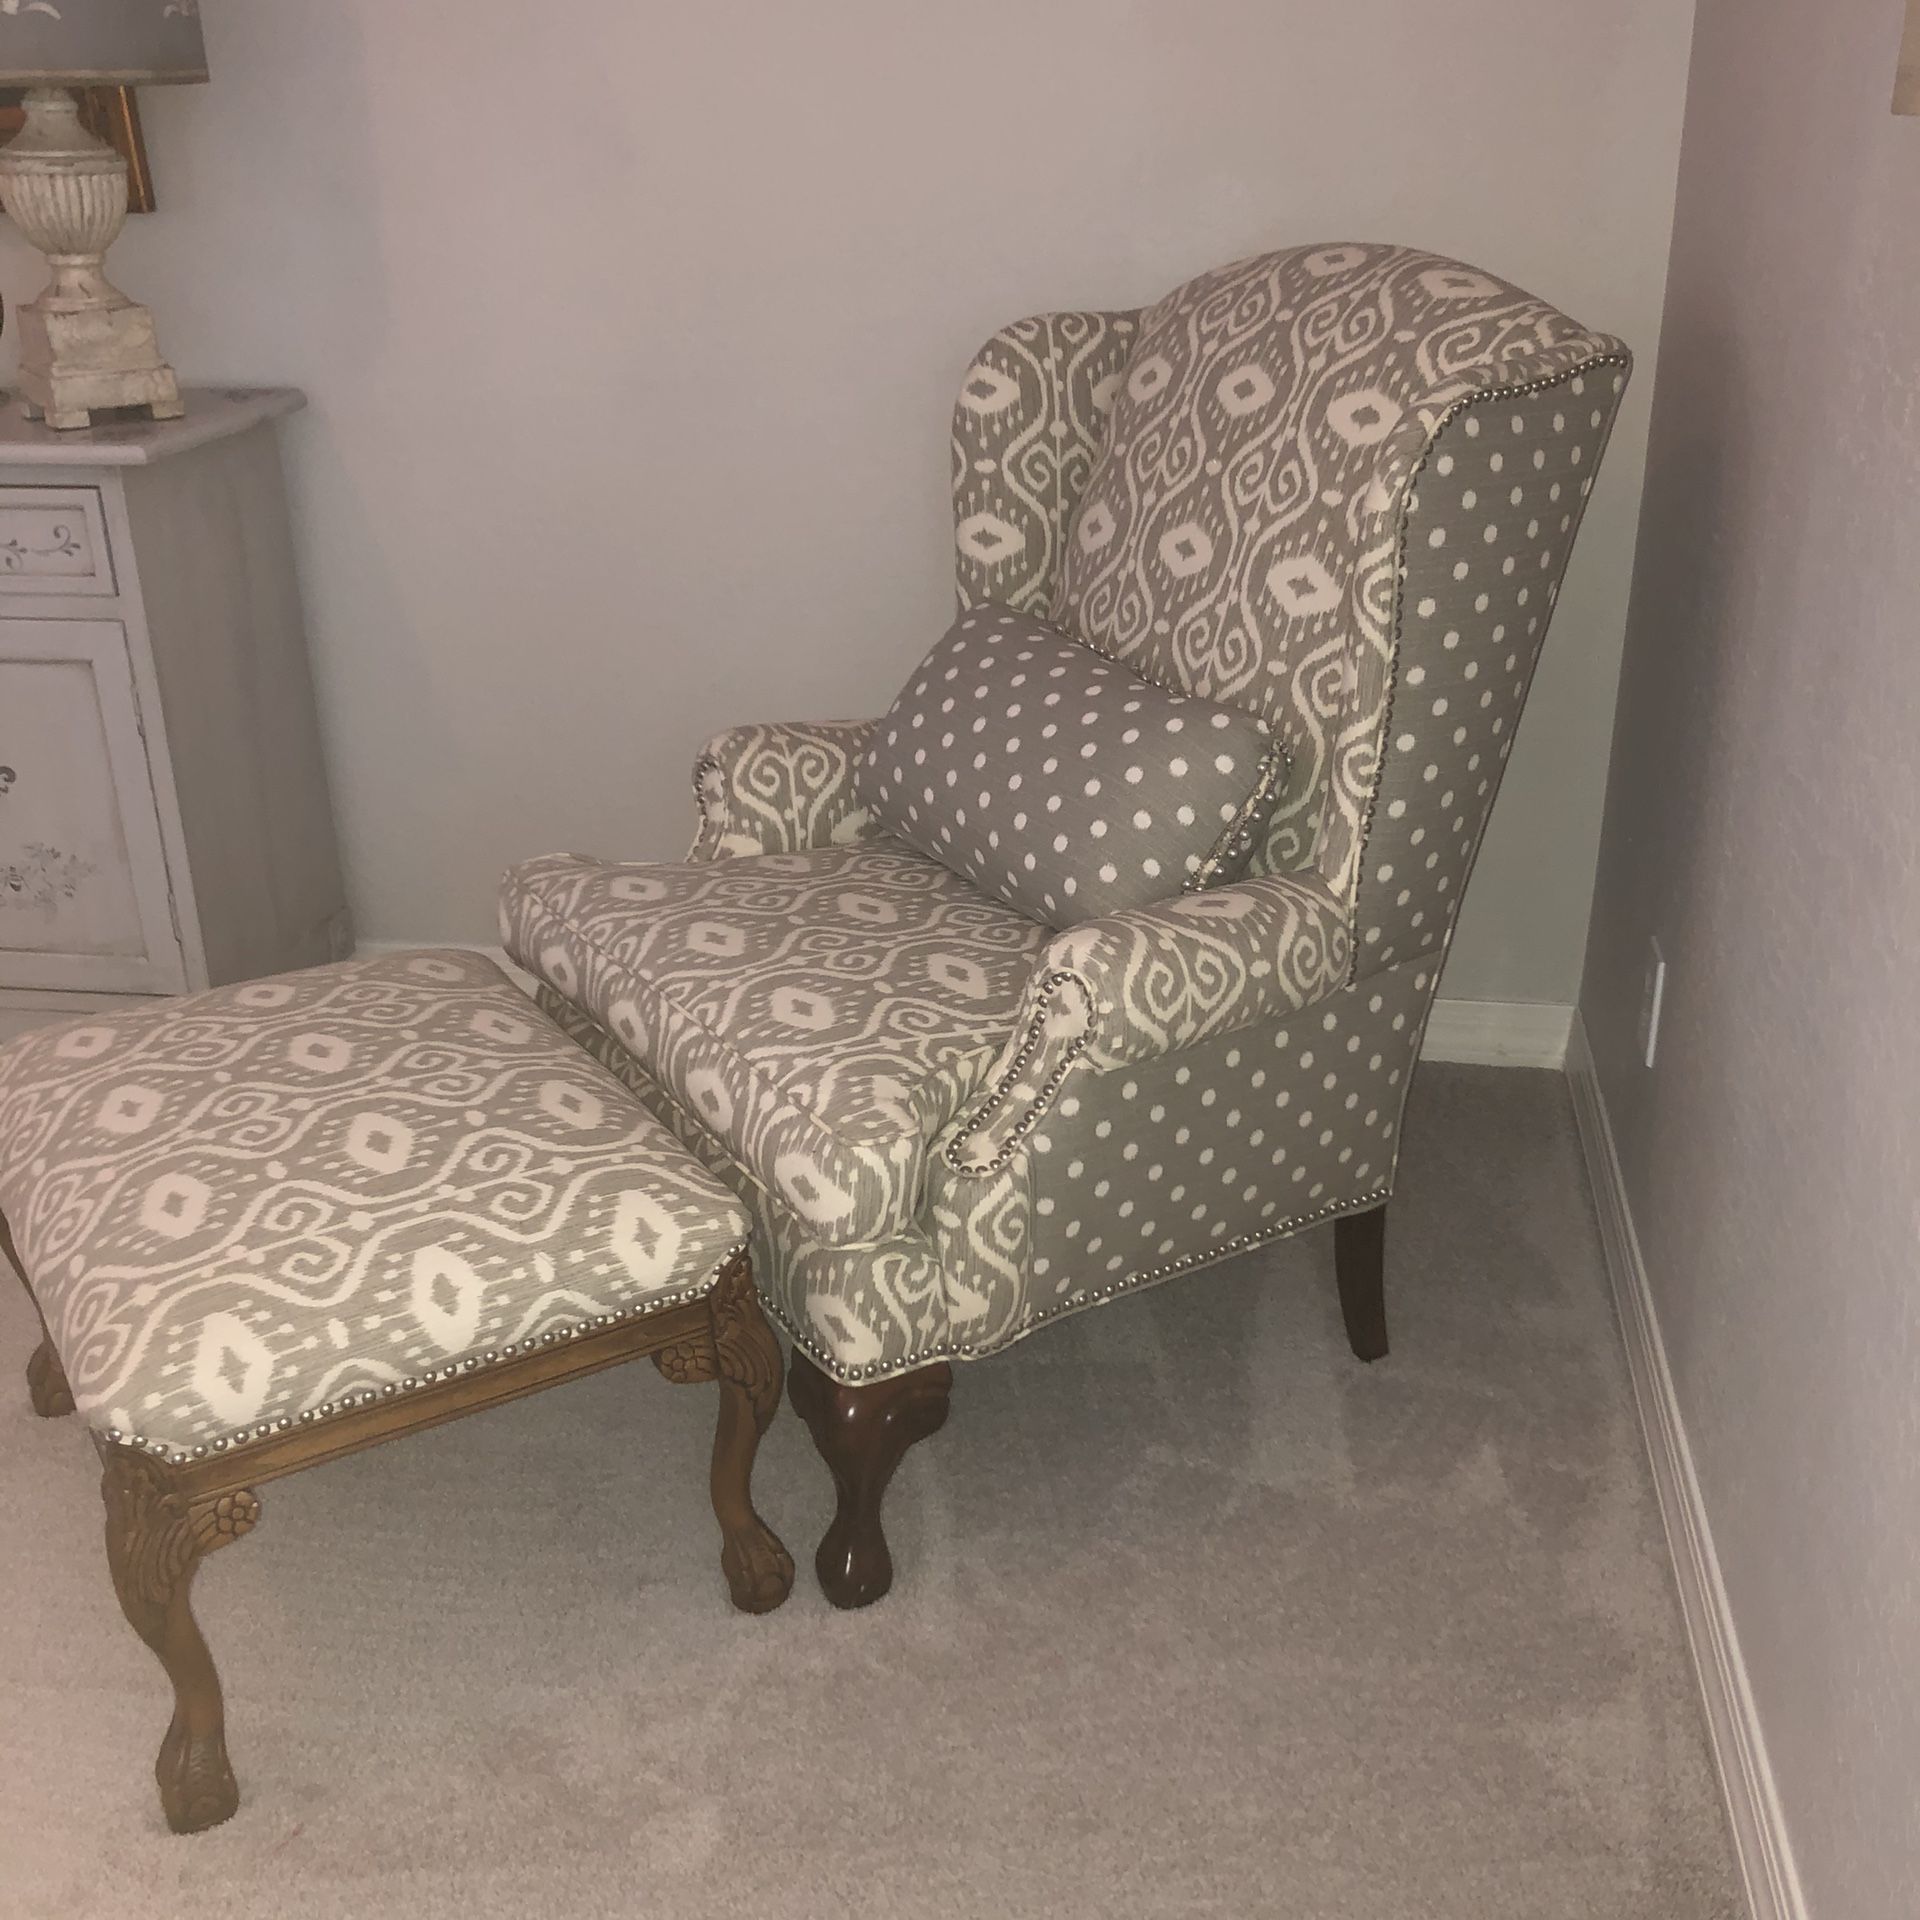 Very nice tan polka dot ikat print chair and ottoman